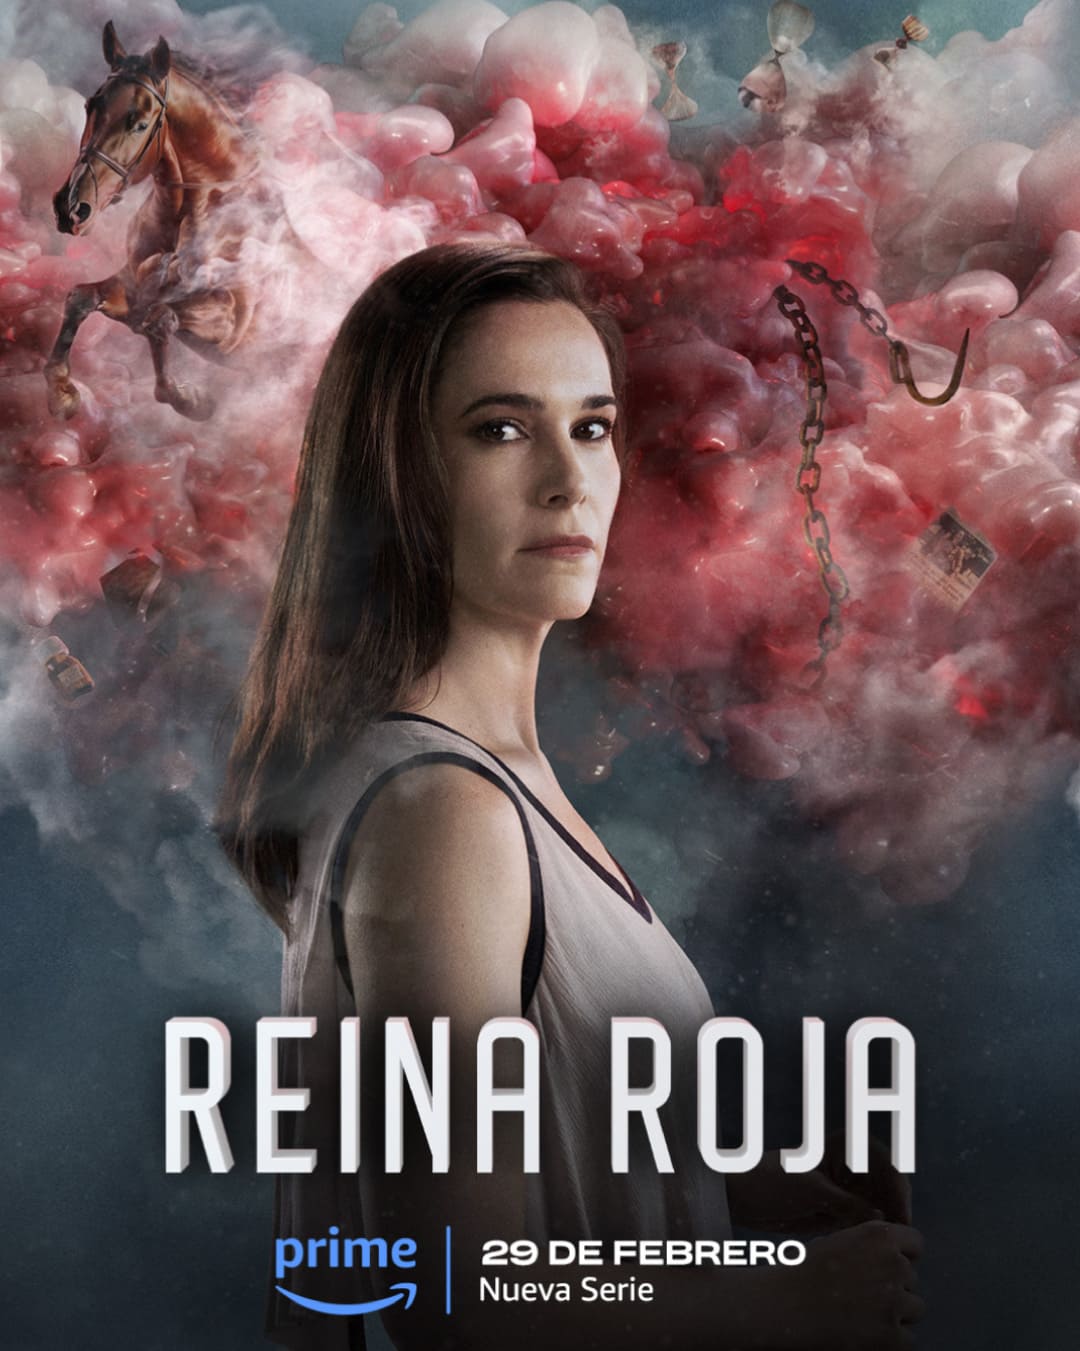 Campaña producida por Enri Mür Studio para la serie Reina Roja de Prime Video, basada en el bestseller de Gómez Jurado.